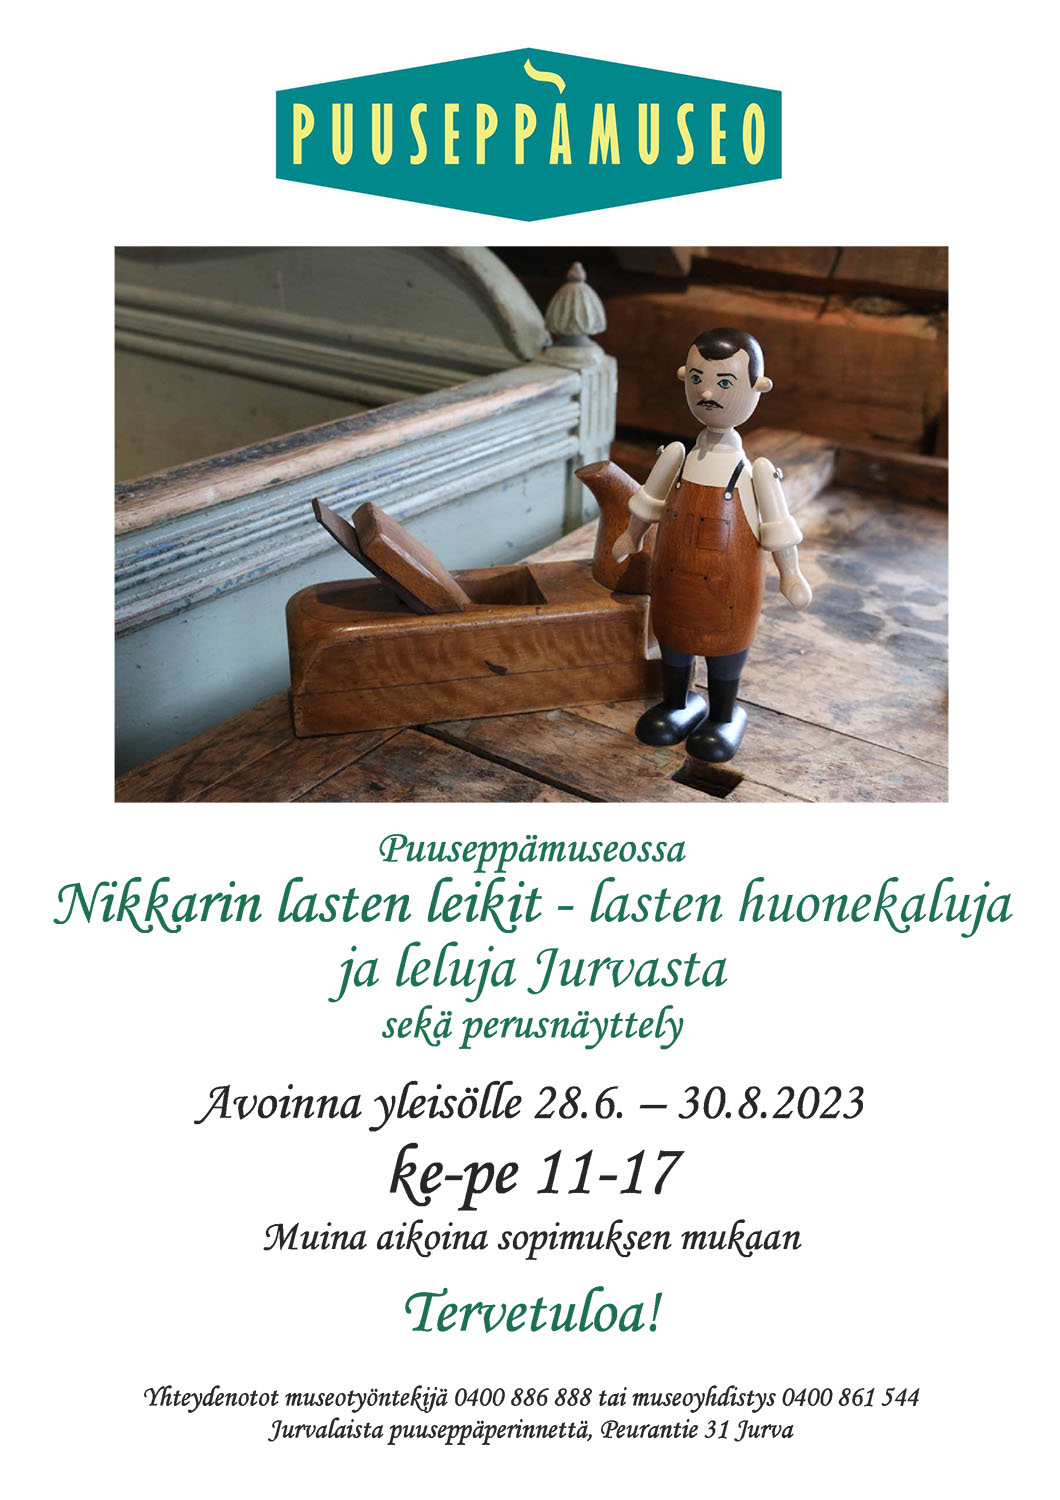 Puuseppämuseo | Kesän 2023 teemanäyttely |  Nikkarin lasten leikit - lasten huonekaluja ja leluja Jurvasta